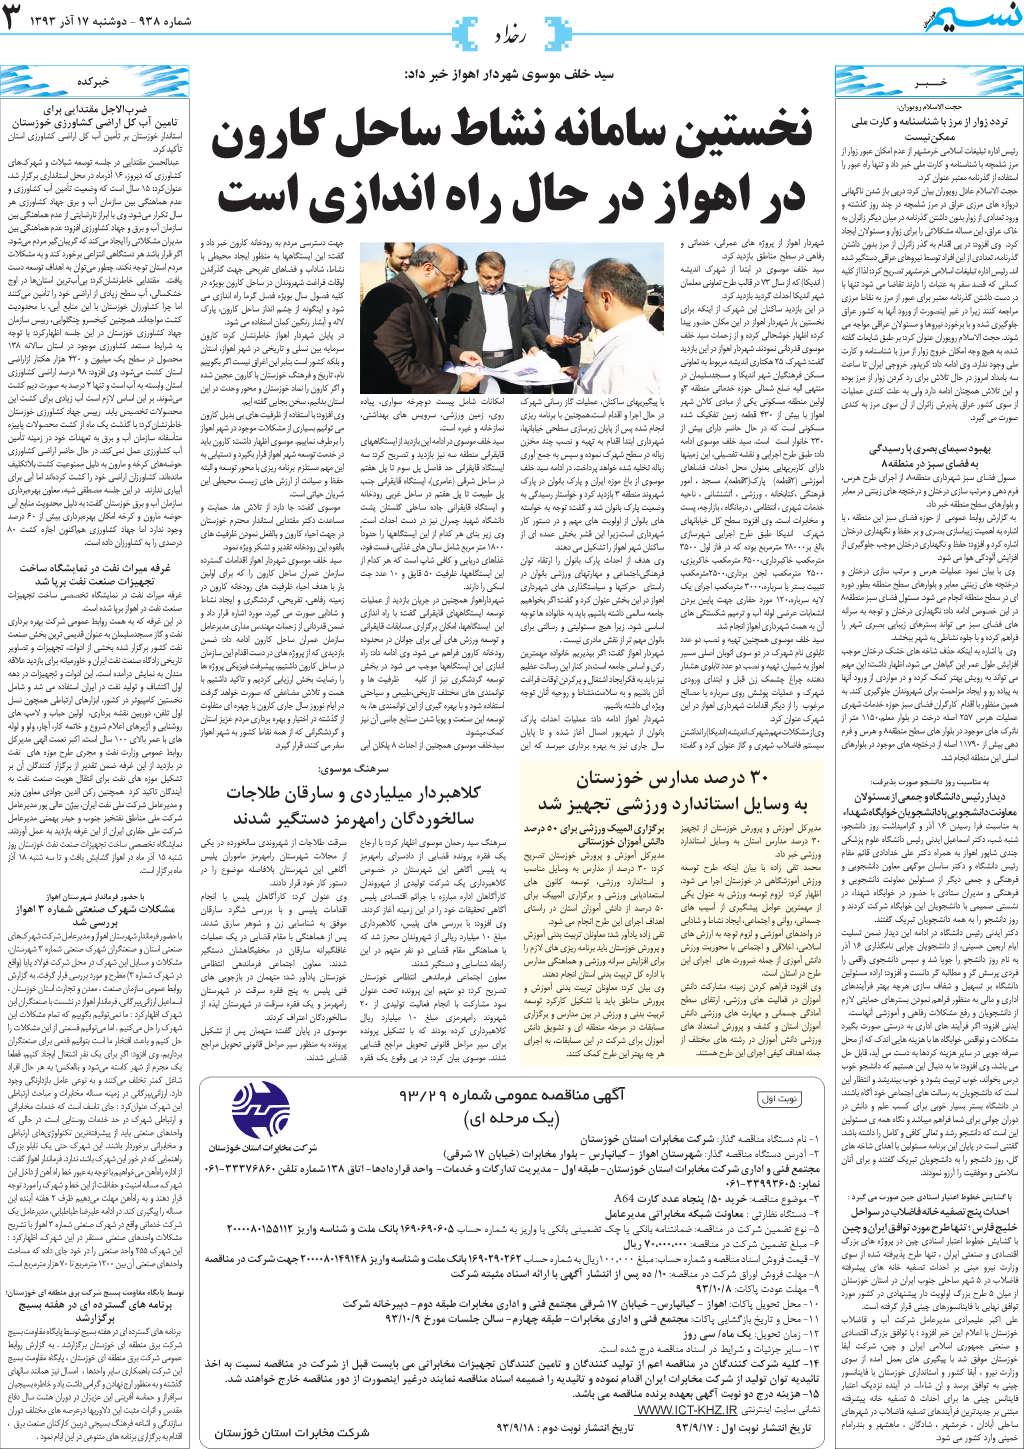 صفحه رخداد روزنامه نسیم شماره 938